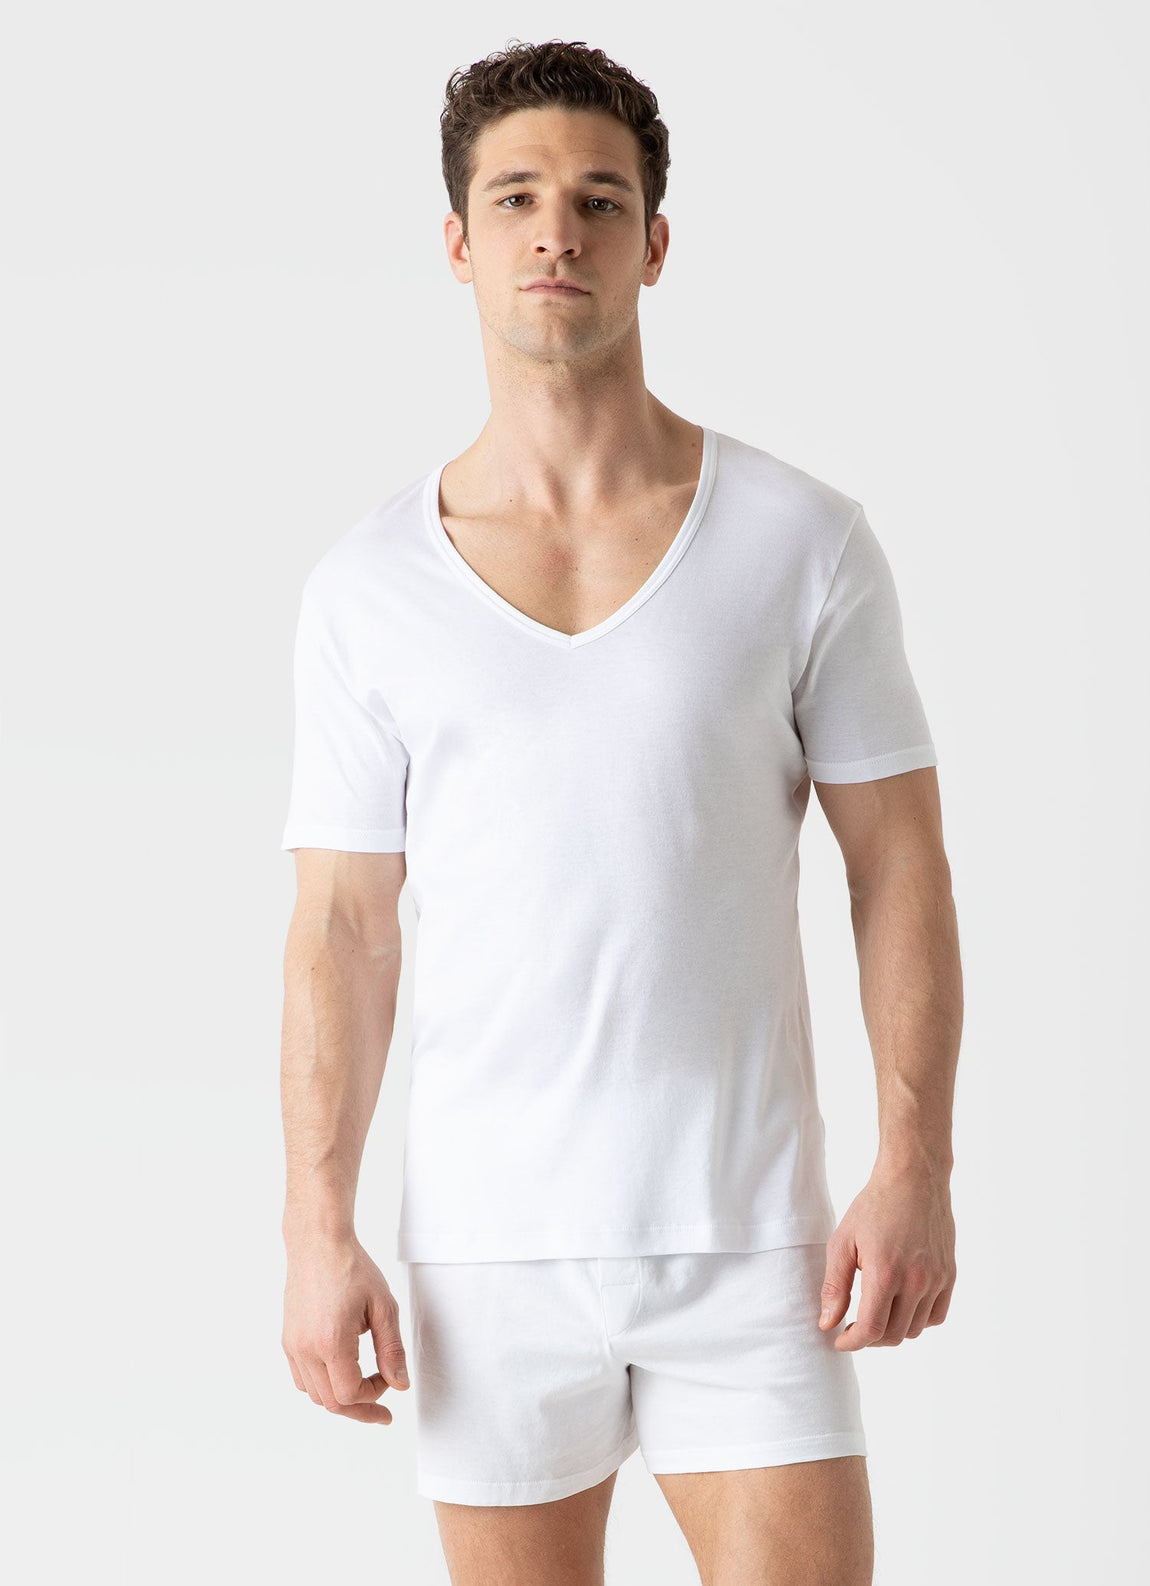 Men's Sea Island Cotton V-neck Underwear T-shirt in White | Sunspel